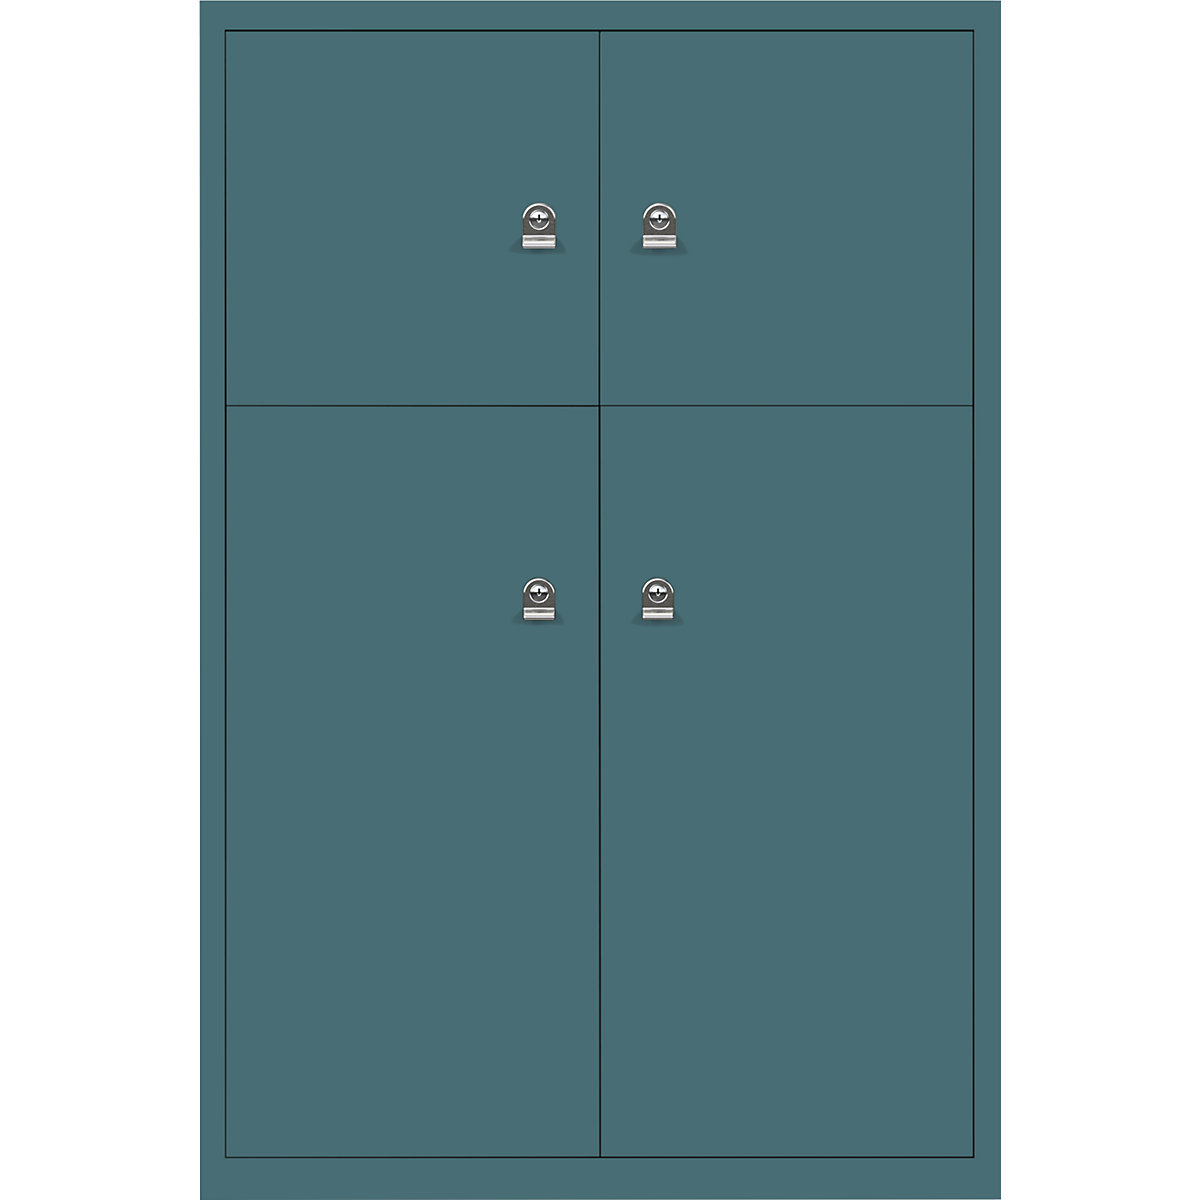 Ormar LateralFile™ Lodge – BISLEY, s 4 pretinca sa zaključavanjem, visina 2 x 375 mm, 2 x 755 mm, u zeleno plavoj boji-14